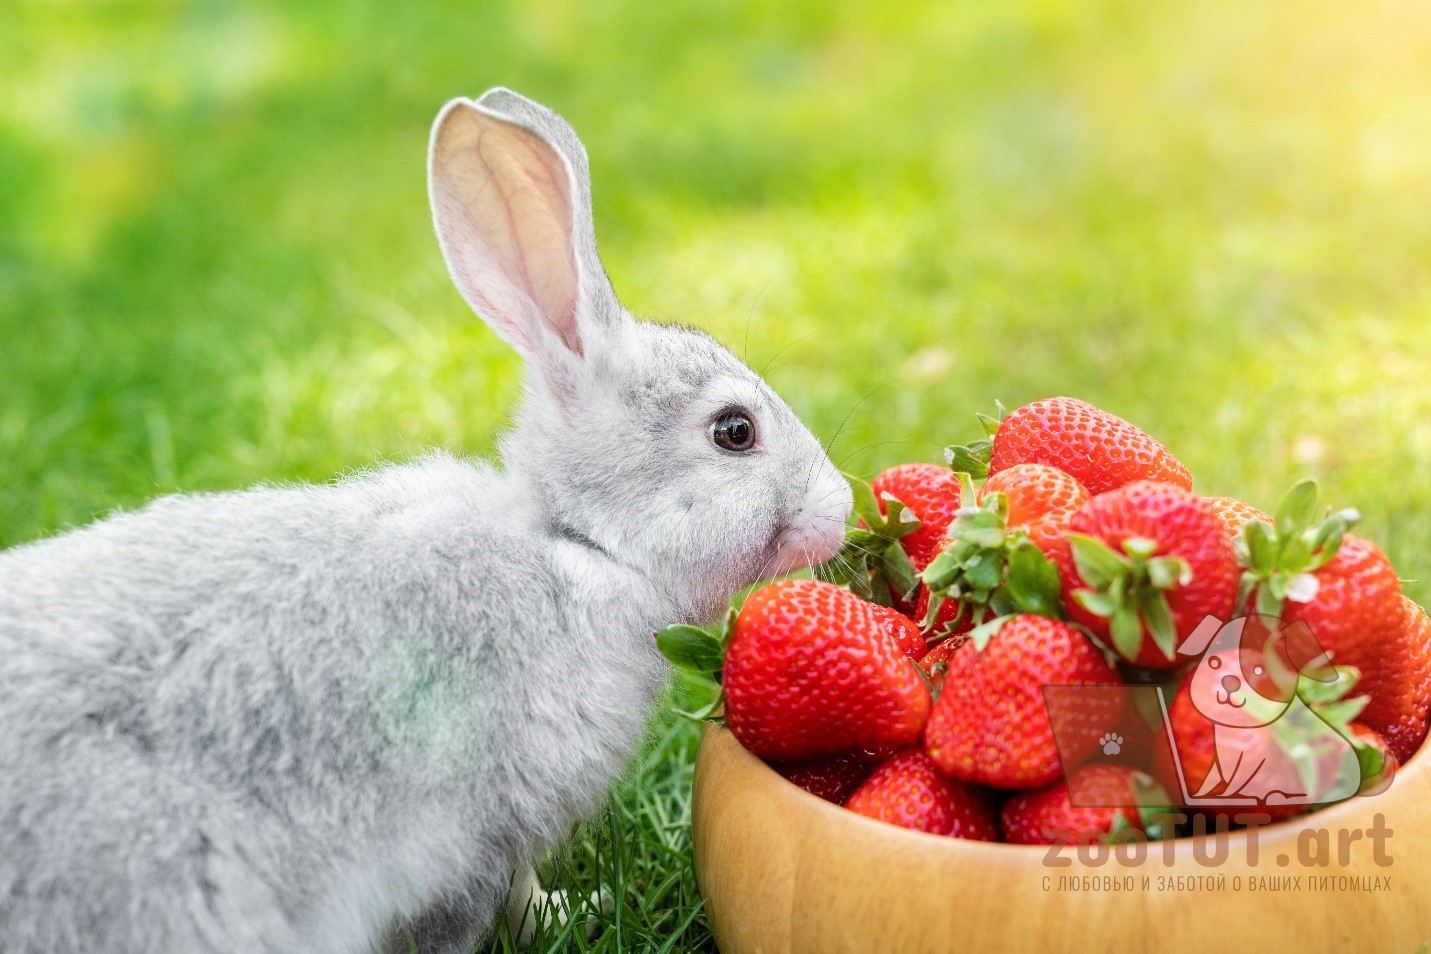 Кроликам можно клубнику. Кролик с ягодами. Rhjkbr d rke,BBRT.